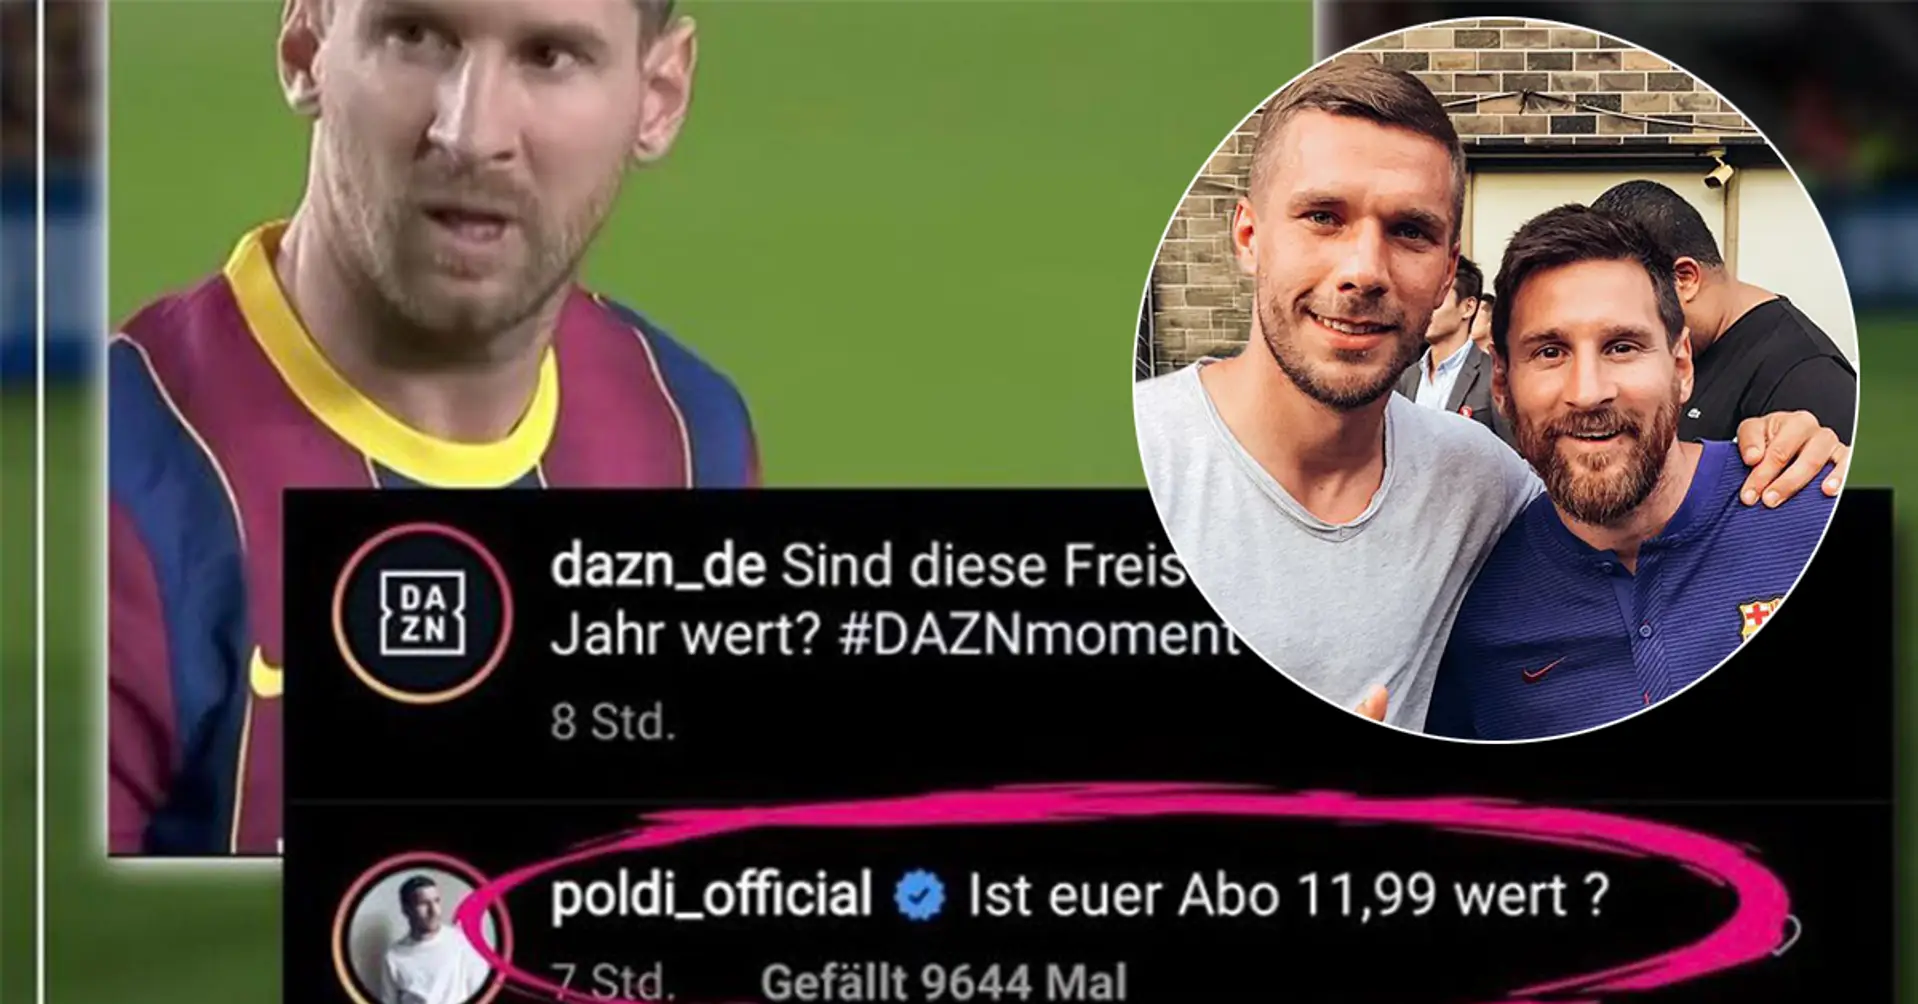 Lukas Podolski défend l'honneur de Leo Messi après que la plate-forme de streaming DAZN ait frappé Leo